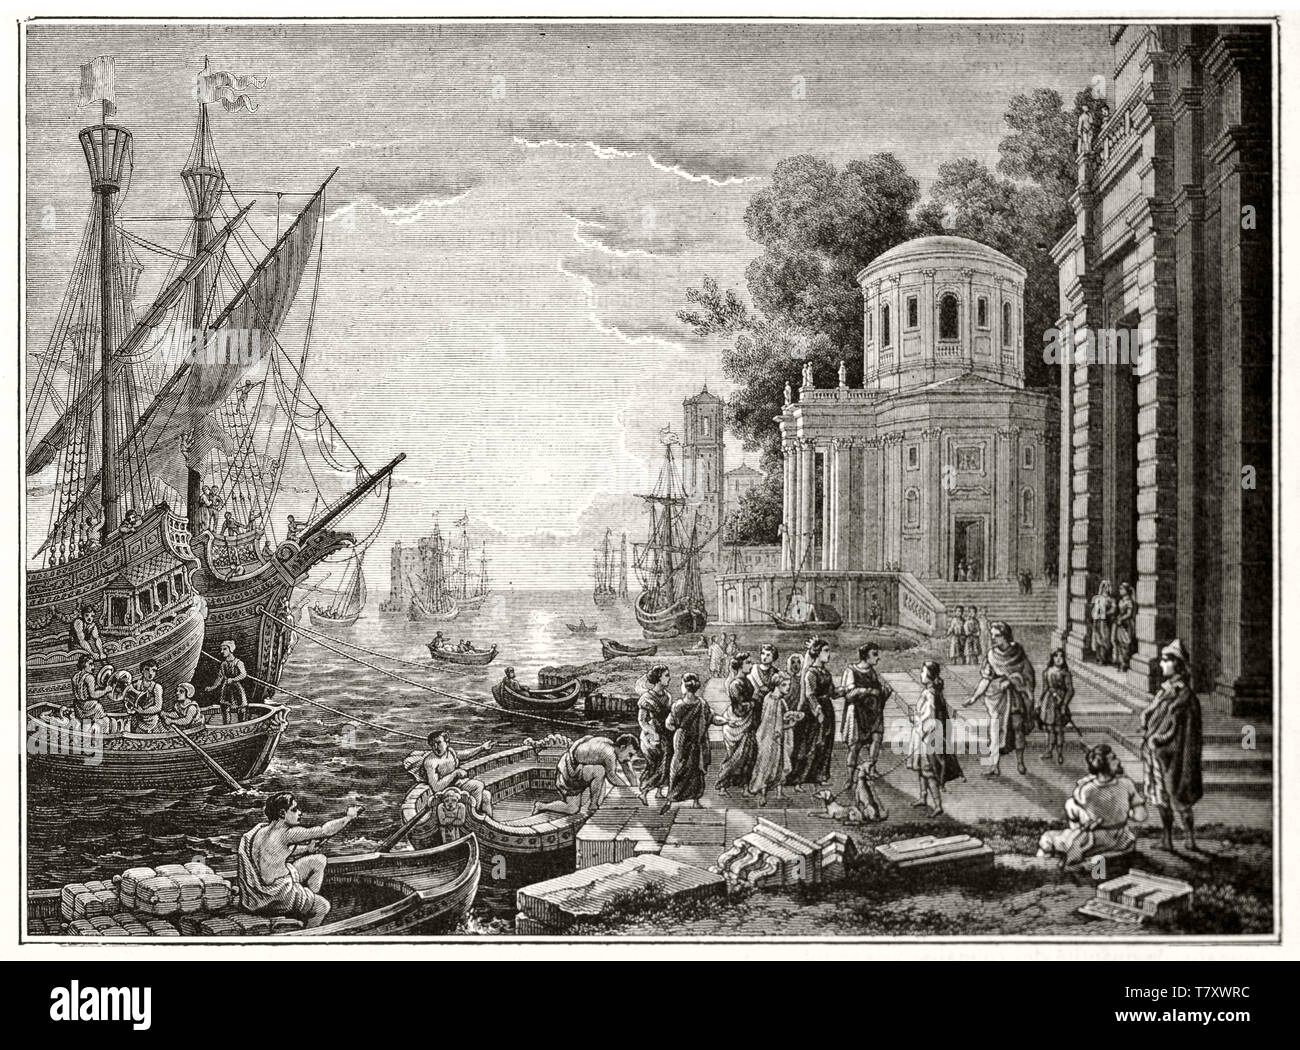 Die ausschiffung der Kleopatra in Tarsus antike Radierung reichen von klassischen Elementen wie Gebäude, Schiffe, das Meer und den Sonnenuntergang alle in eine wunderbare Komposition arrangiert. Magasin Pittoresque 1848 Stockfoto